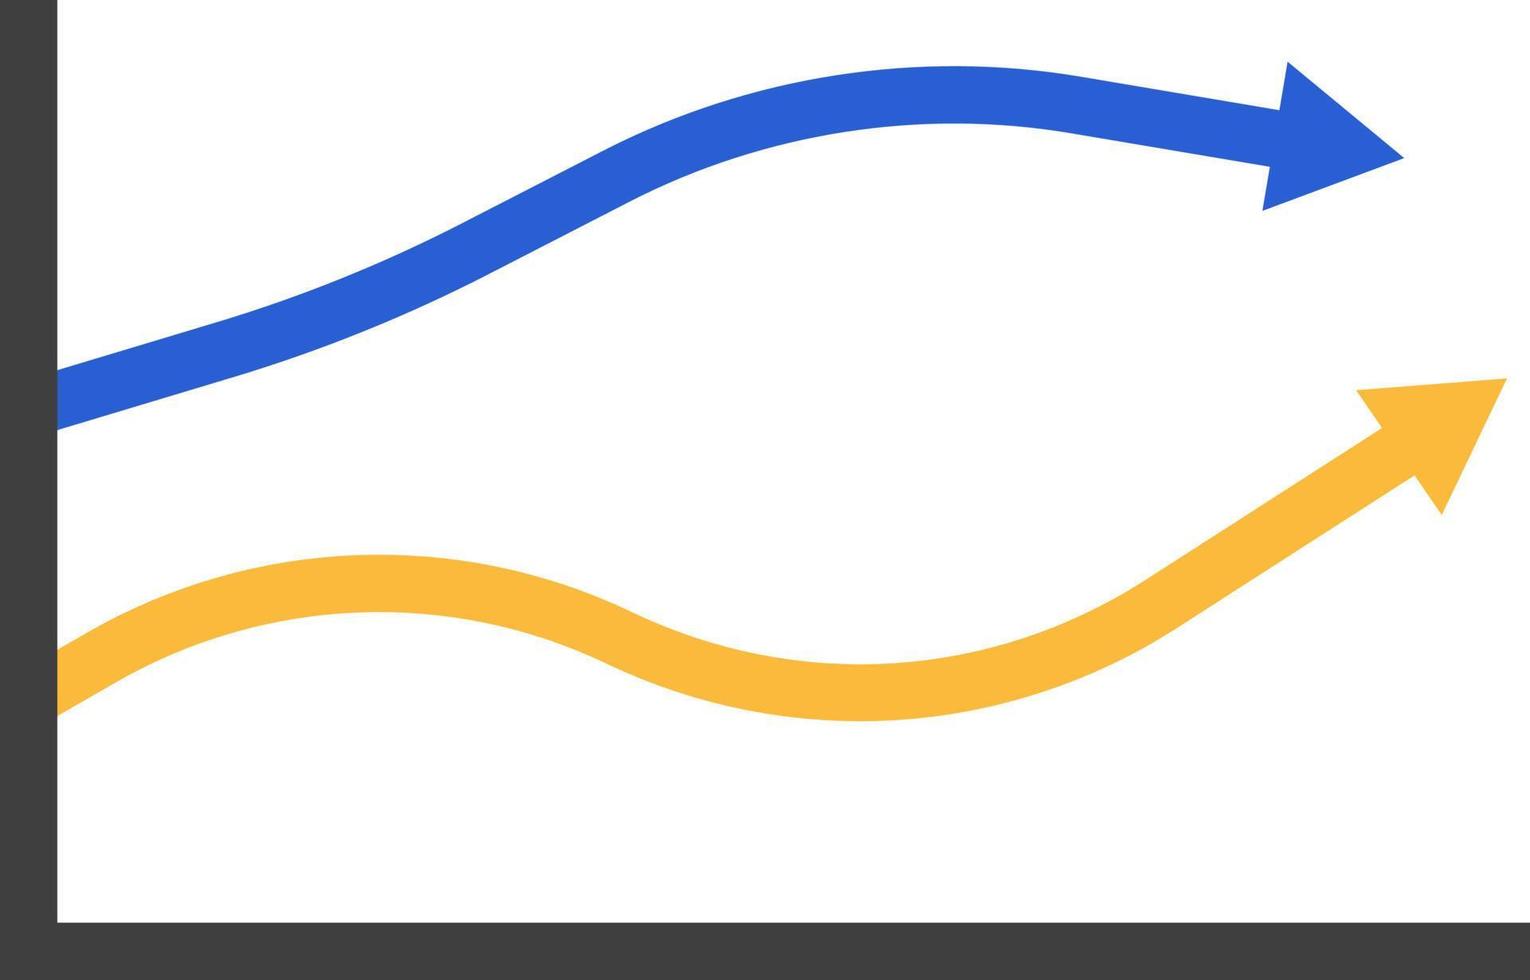 graphique de flèches jaunes et bleues, illustration, vecteur sur fond blanc.